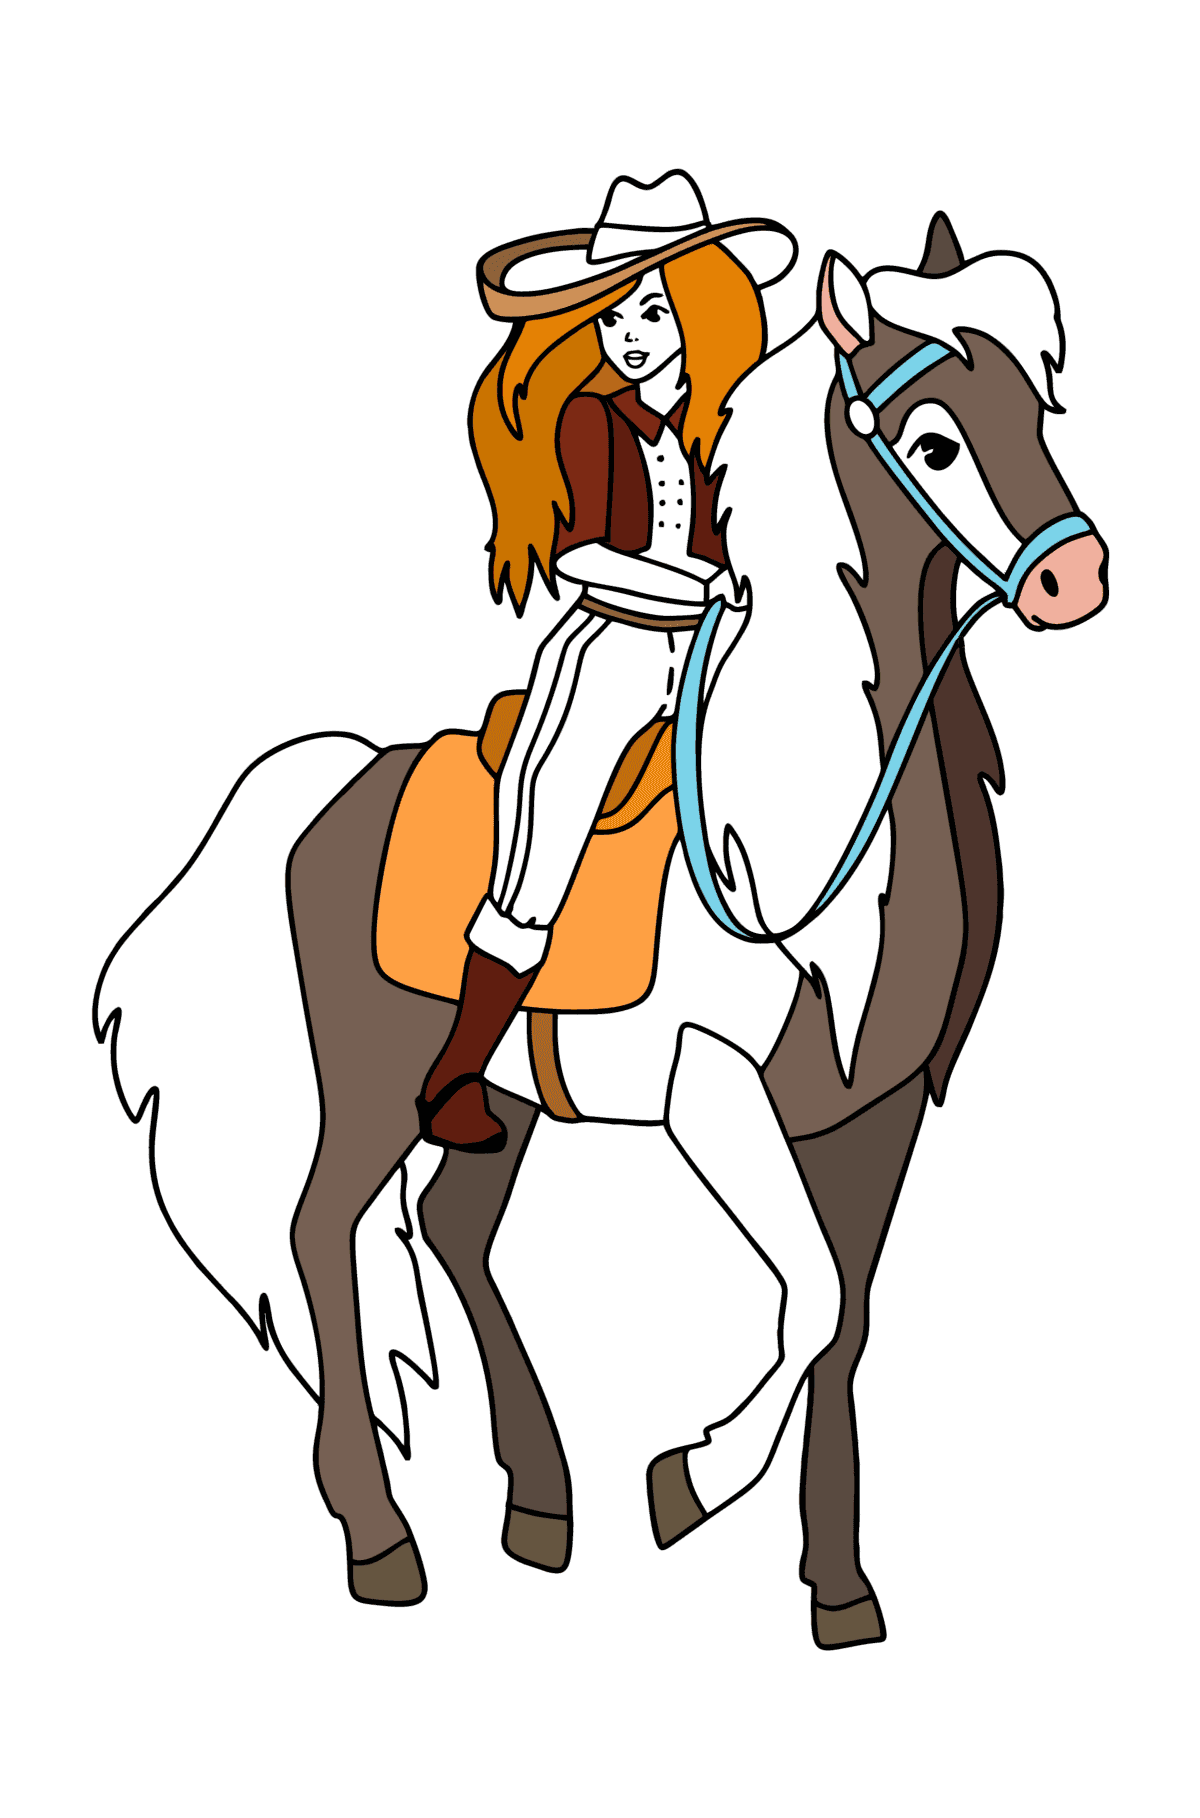 Tegning til farvning Pige på hest - Tegninger til farvelægning for børn